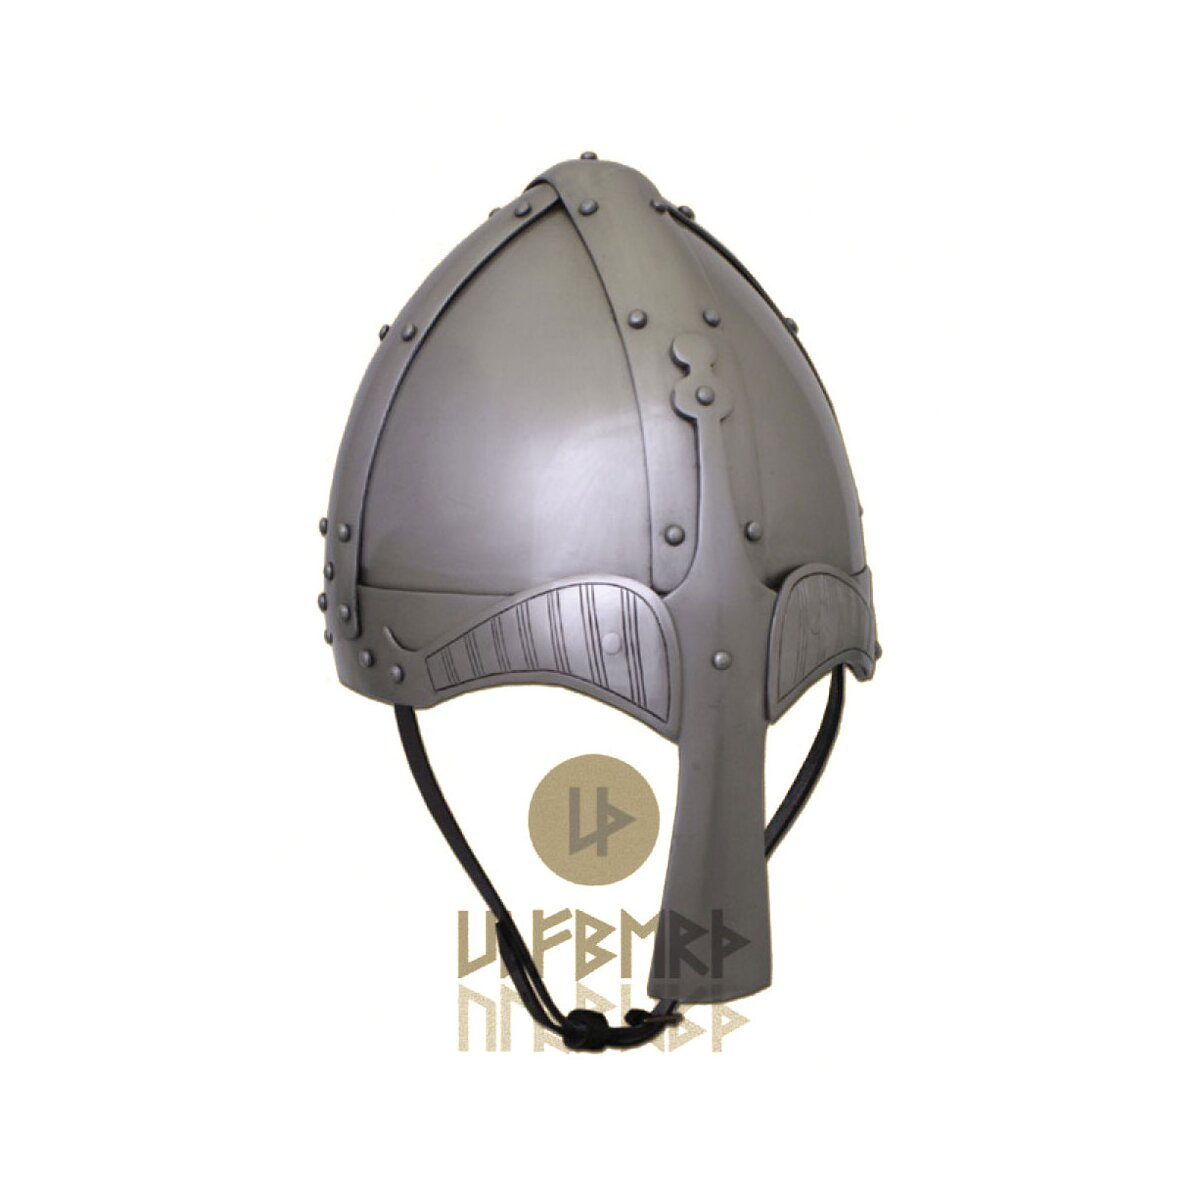 Viking Spangenhelmet, 2 mm steel - battle ready